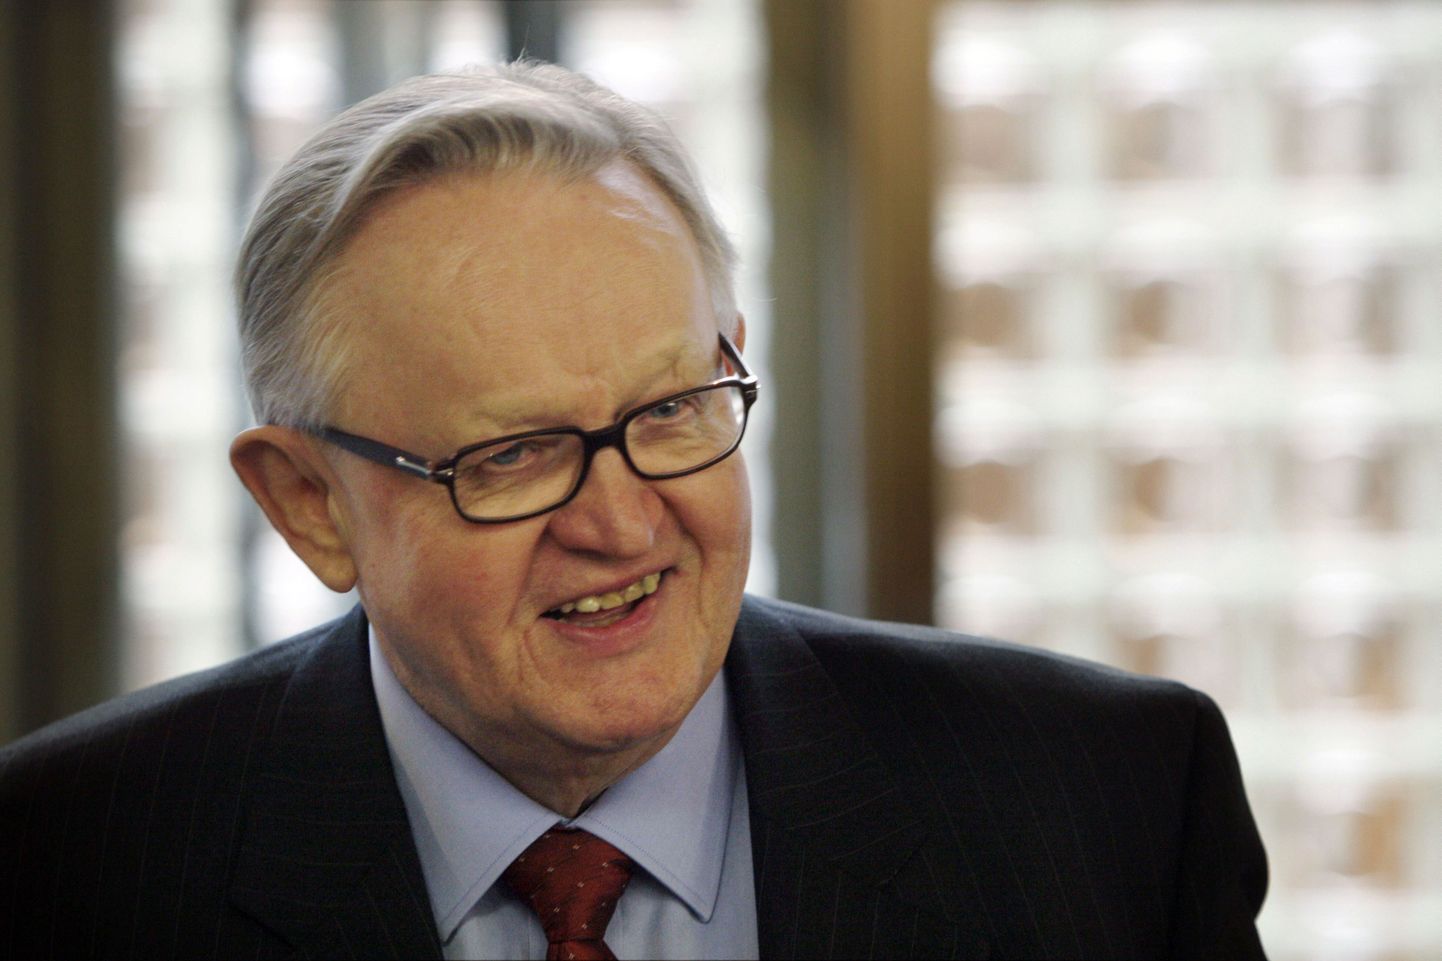 Soome endine president Martti Ahtisaari